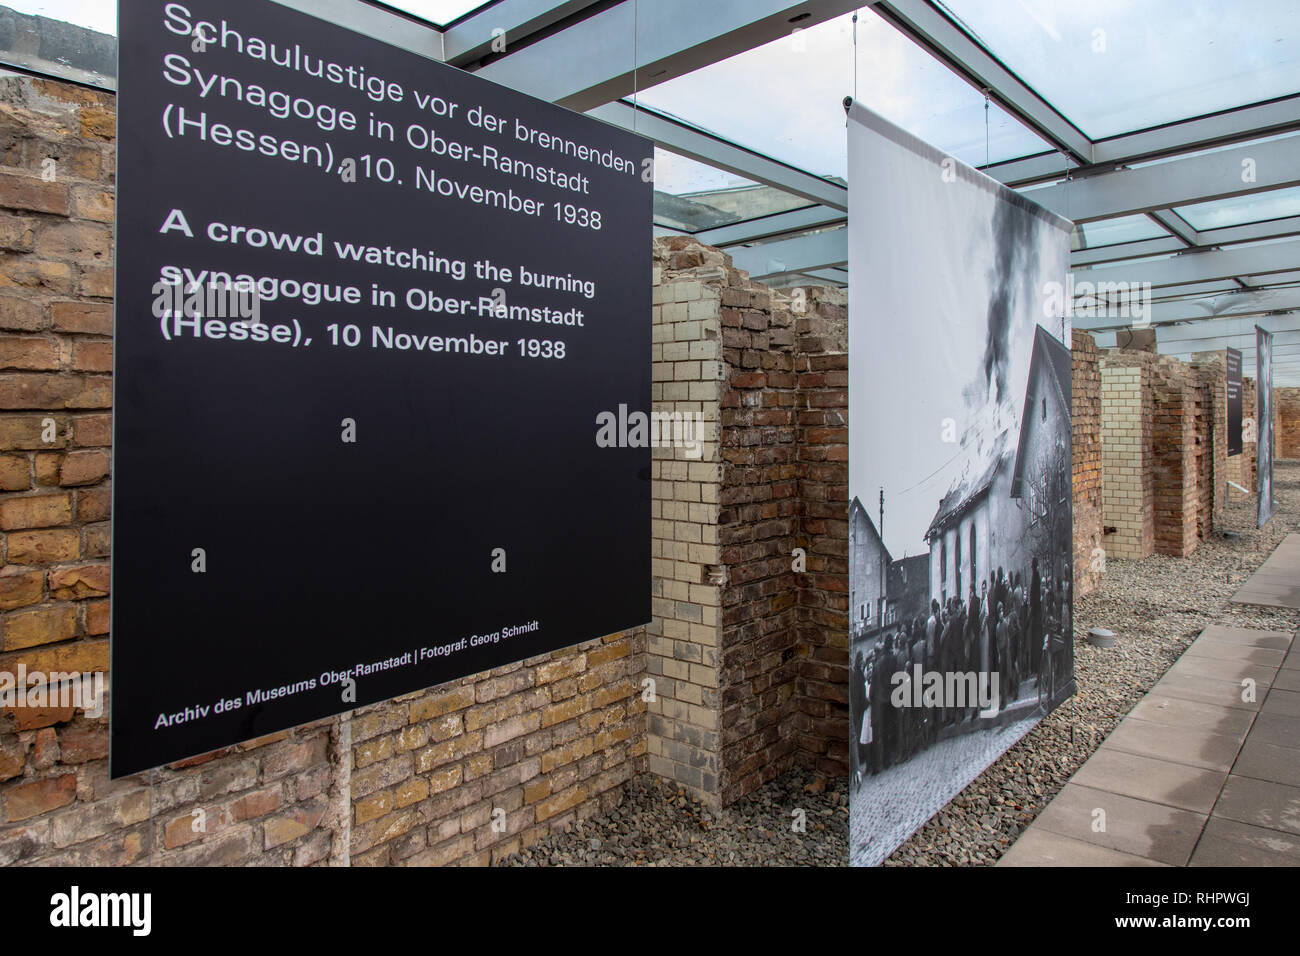 Železná opona - Berlínská zeď a Muzeum Topografie teroru, Berlín, Německo /  Iron Curtain - The Berlin Wall, Topography of Terror museum and Check Poin  Stock Photo - Alamy